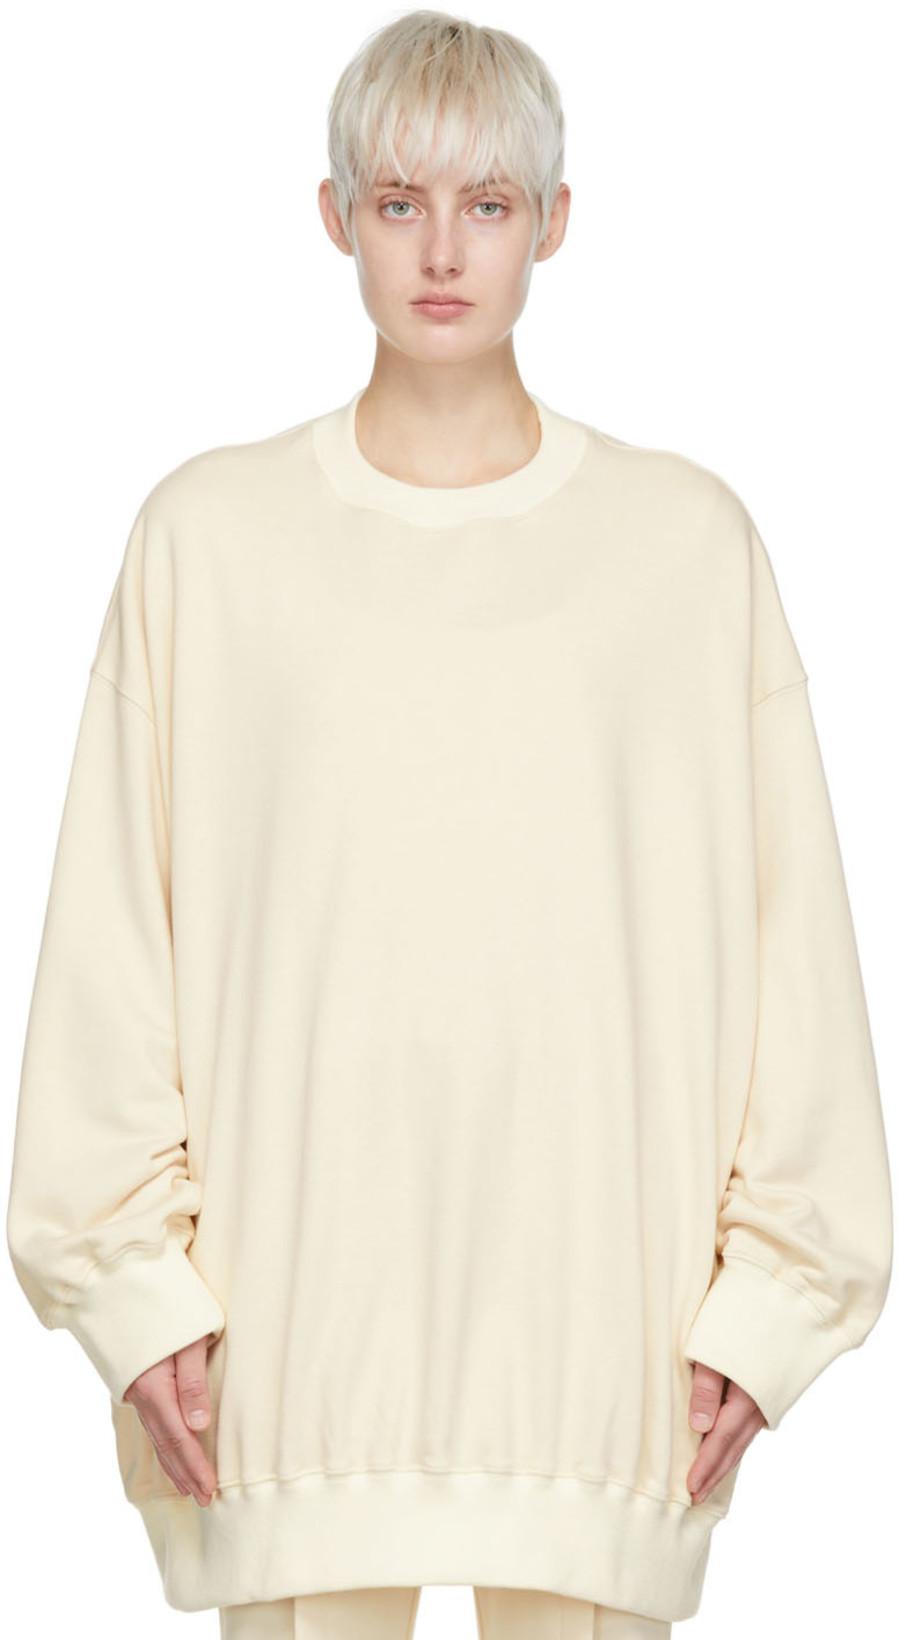 Beige Cotton Sweatshirt by DETERM;